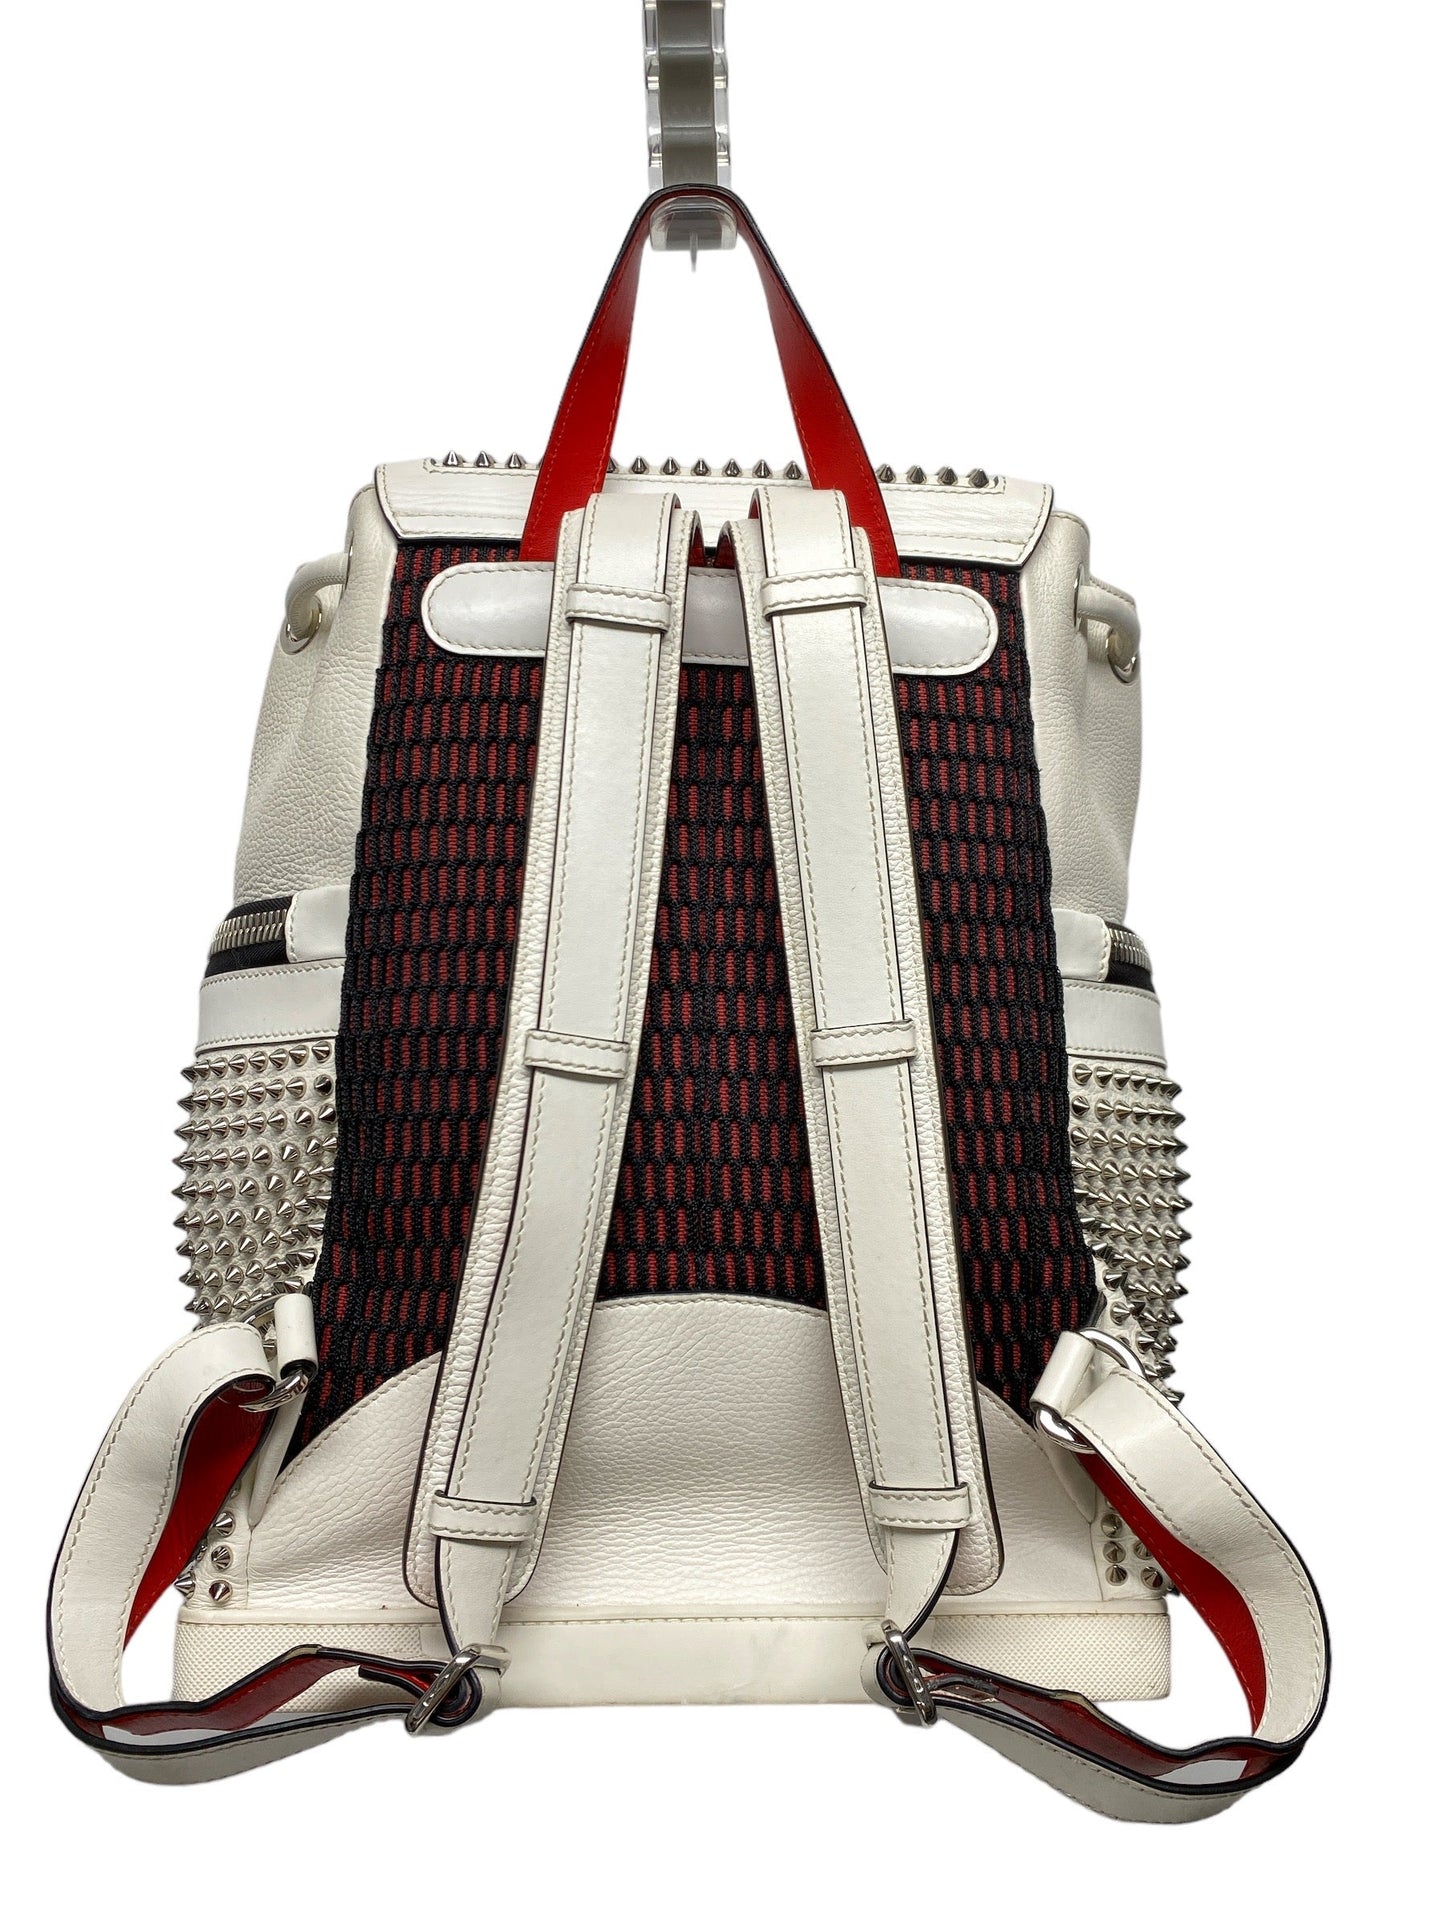 Backpack Luxury Designer Christian Louboutin, Size Large